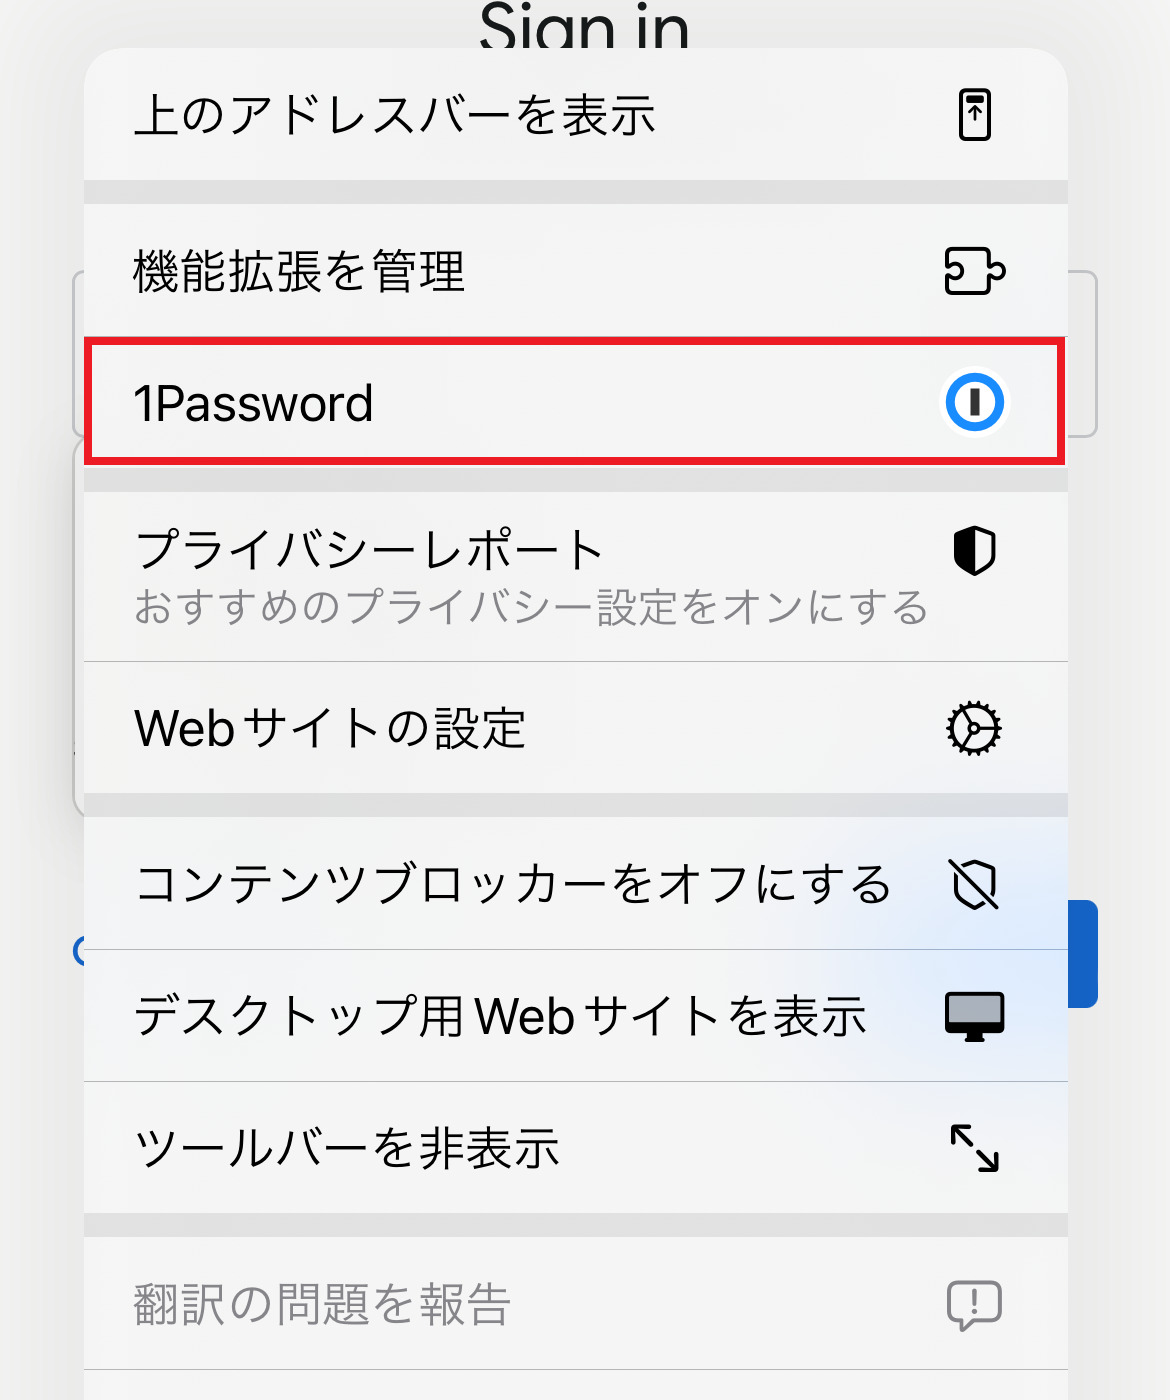 1 password windows